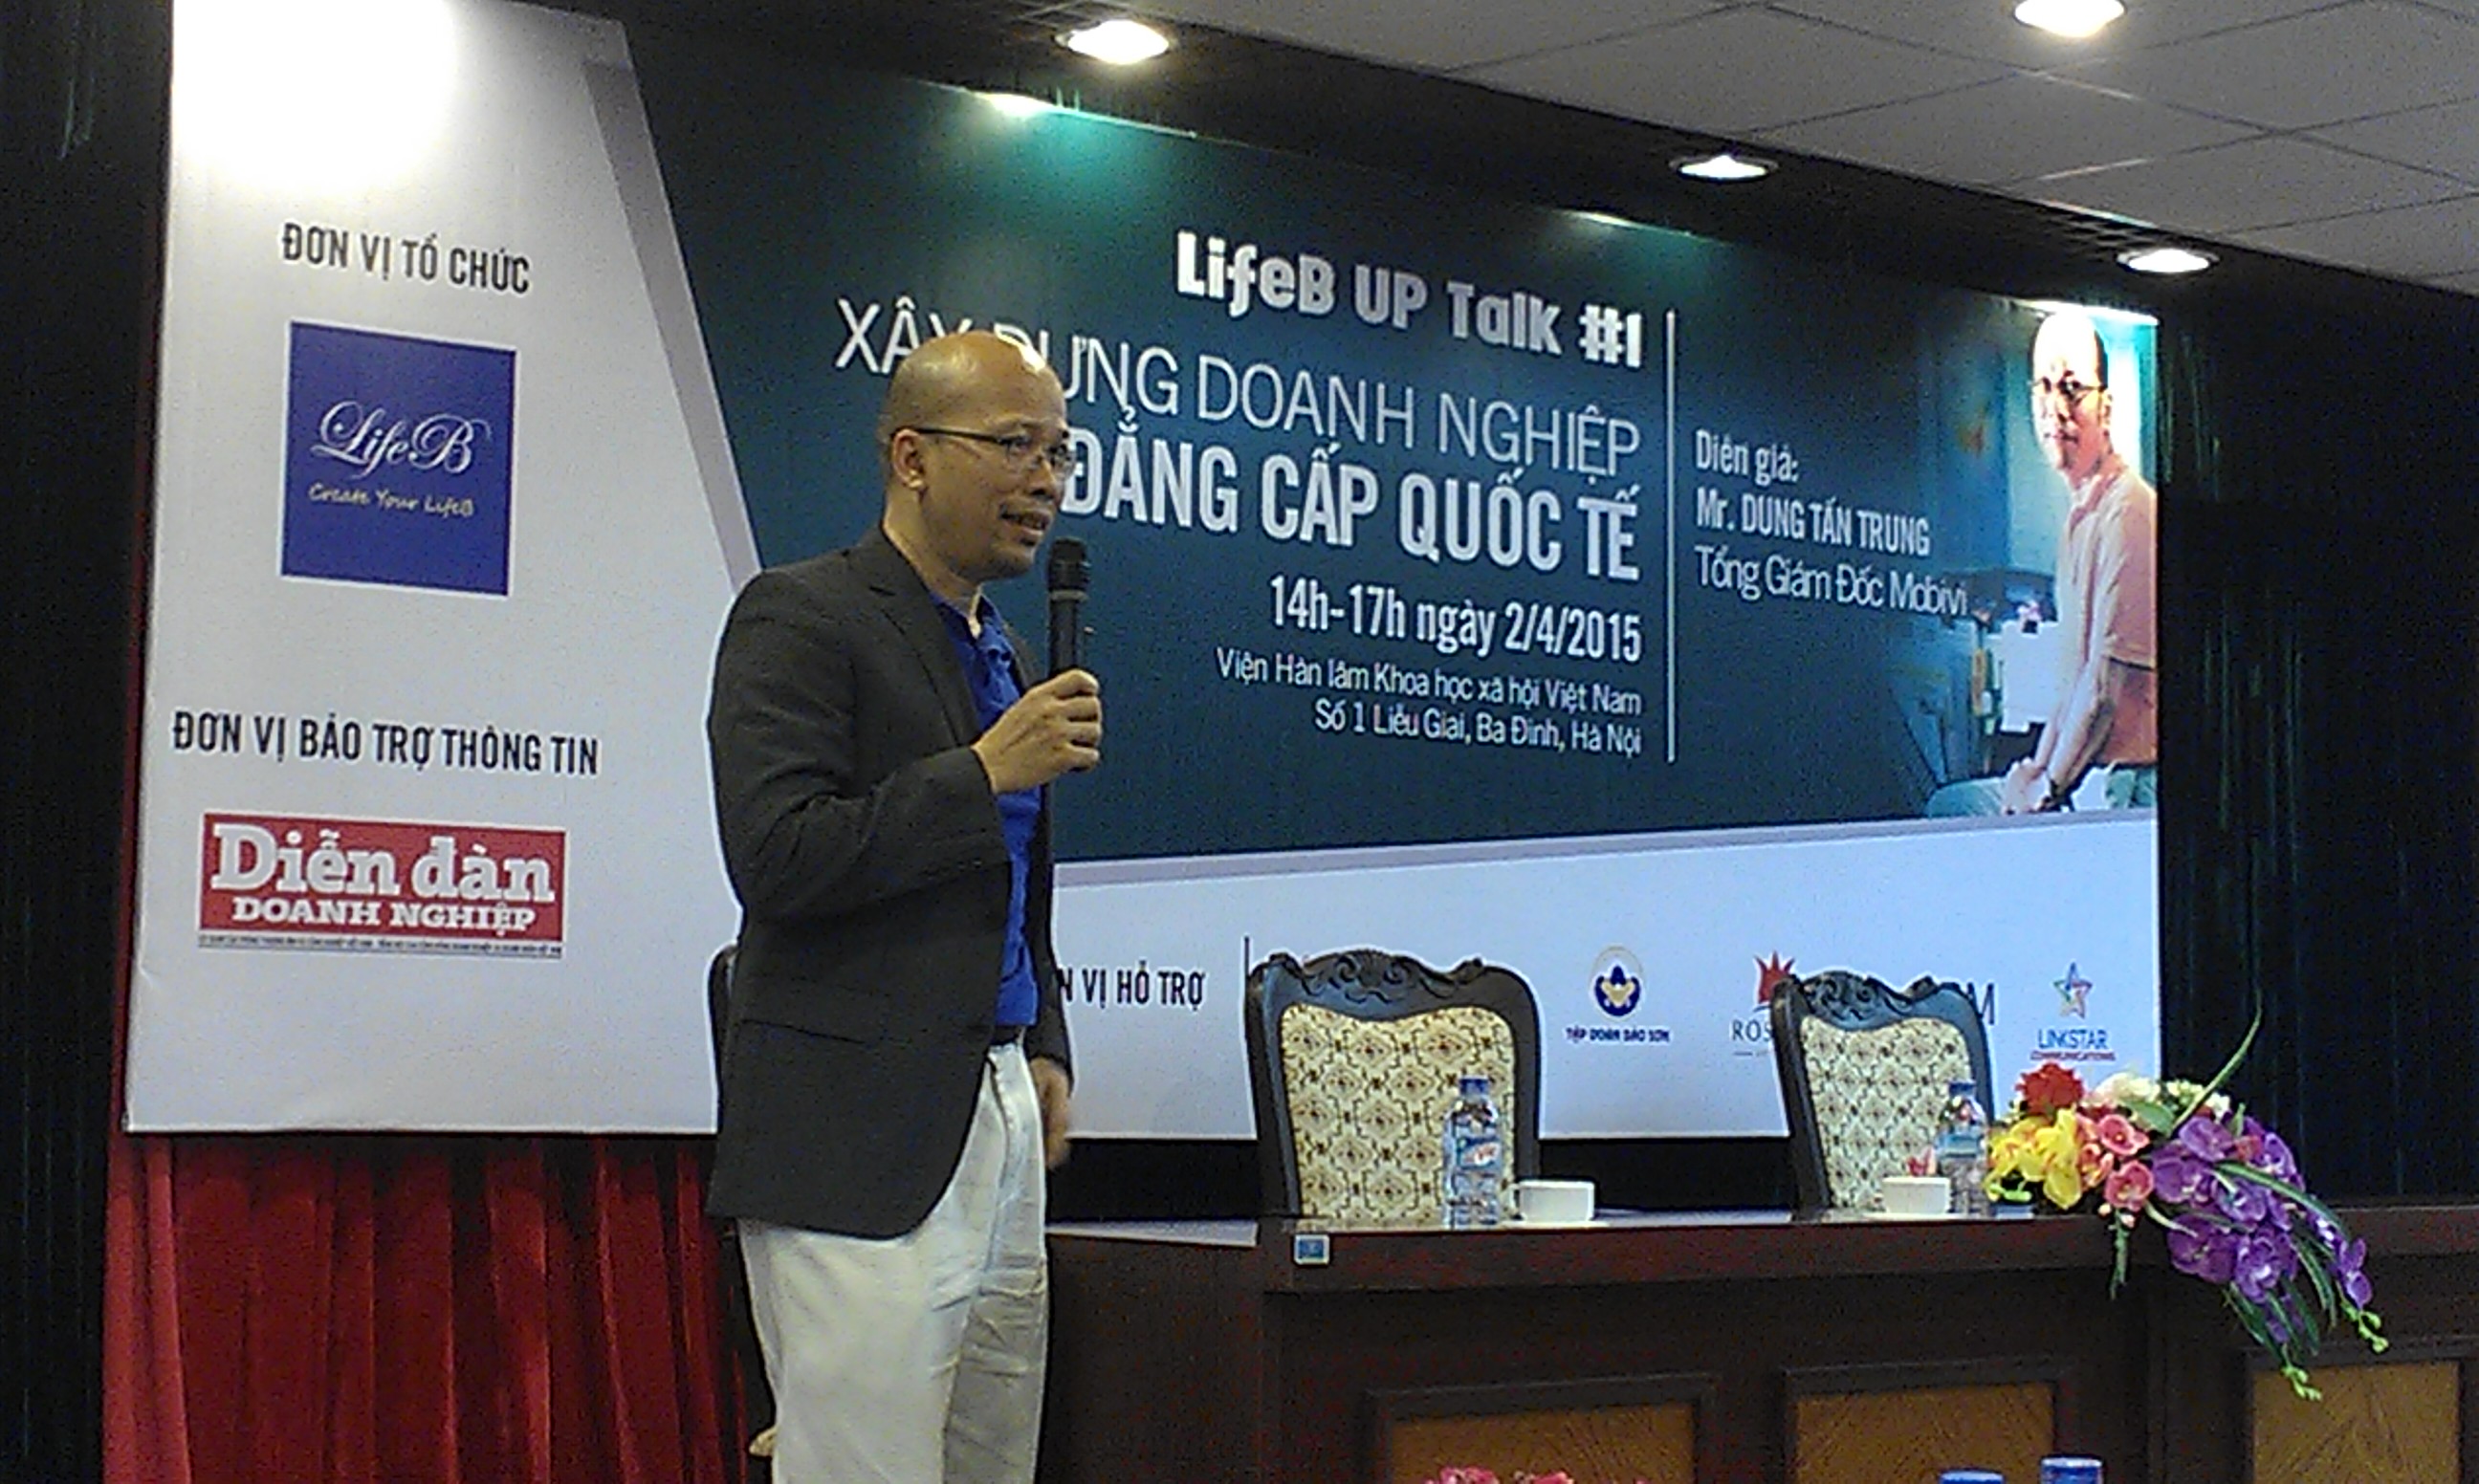 Ông Dung Tấn Trung chia sẻ kinh nghiệm trong buổi gặp mặt ở Hà Nội